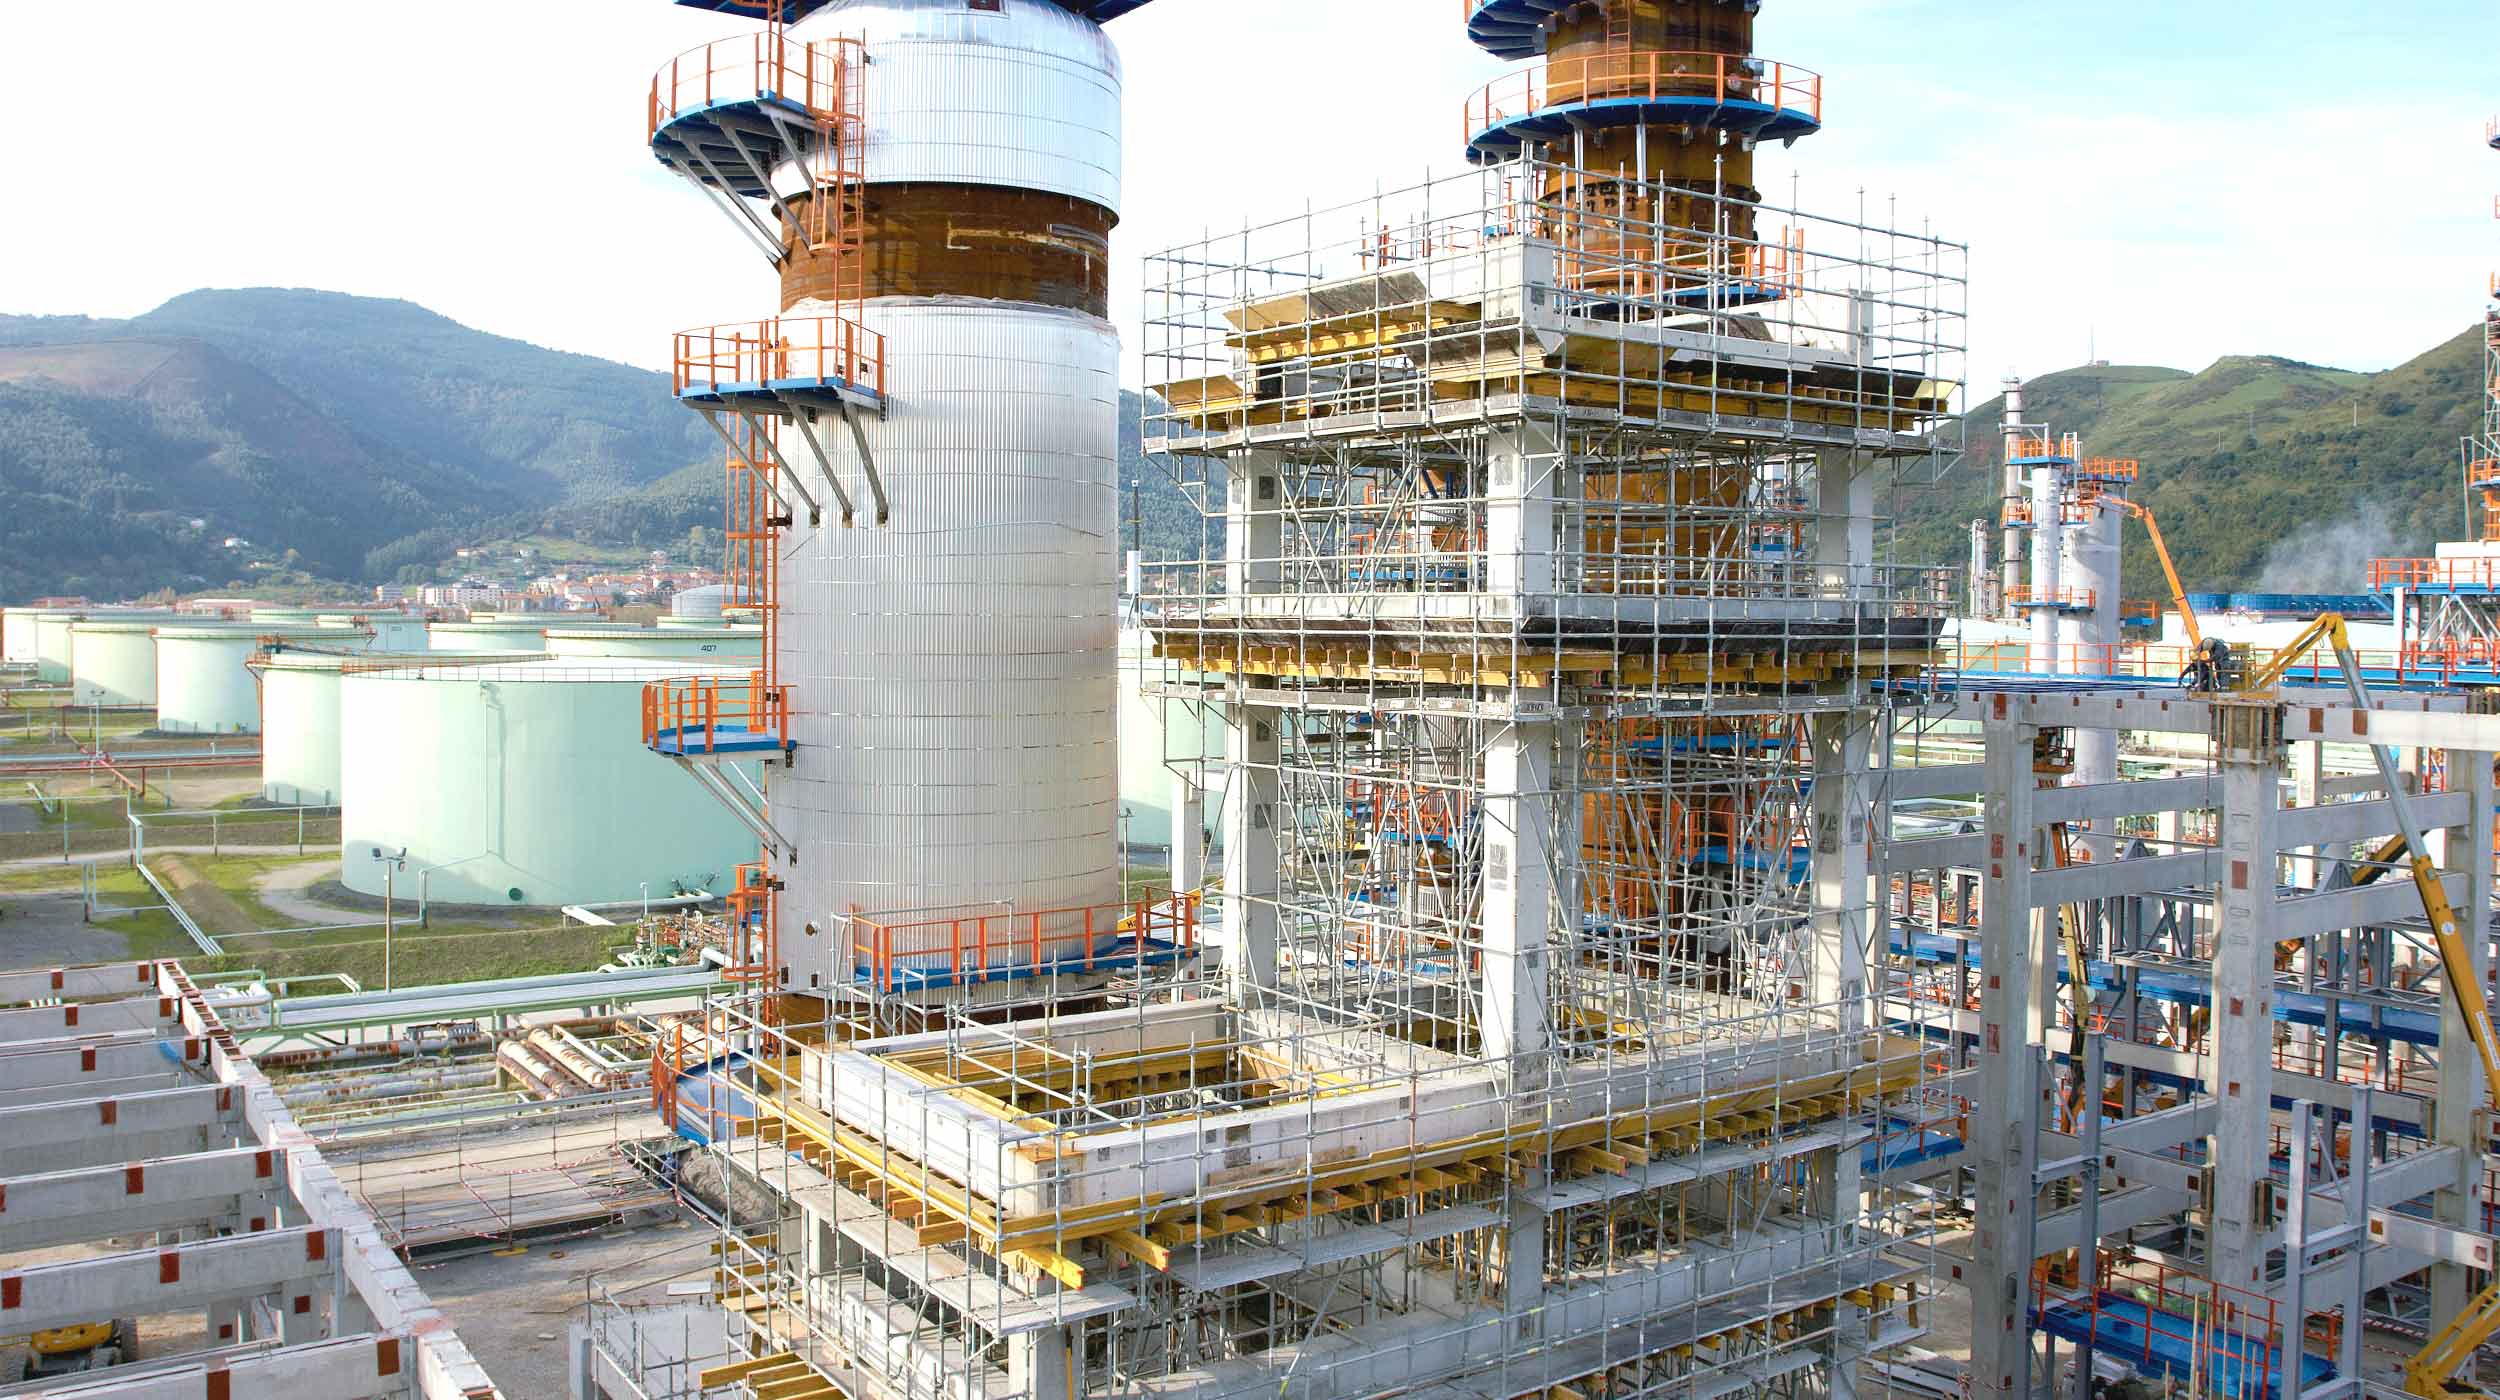 Con oltre 40 anni di attività, la raffineria Petronor è l'impianto più produttivo di tutta la penisola e uno dei più importanti in Europa.